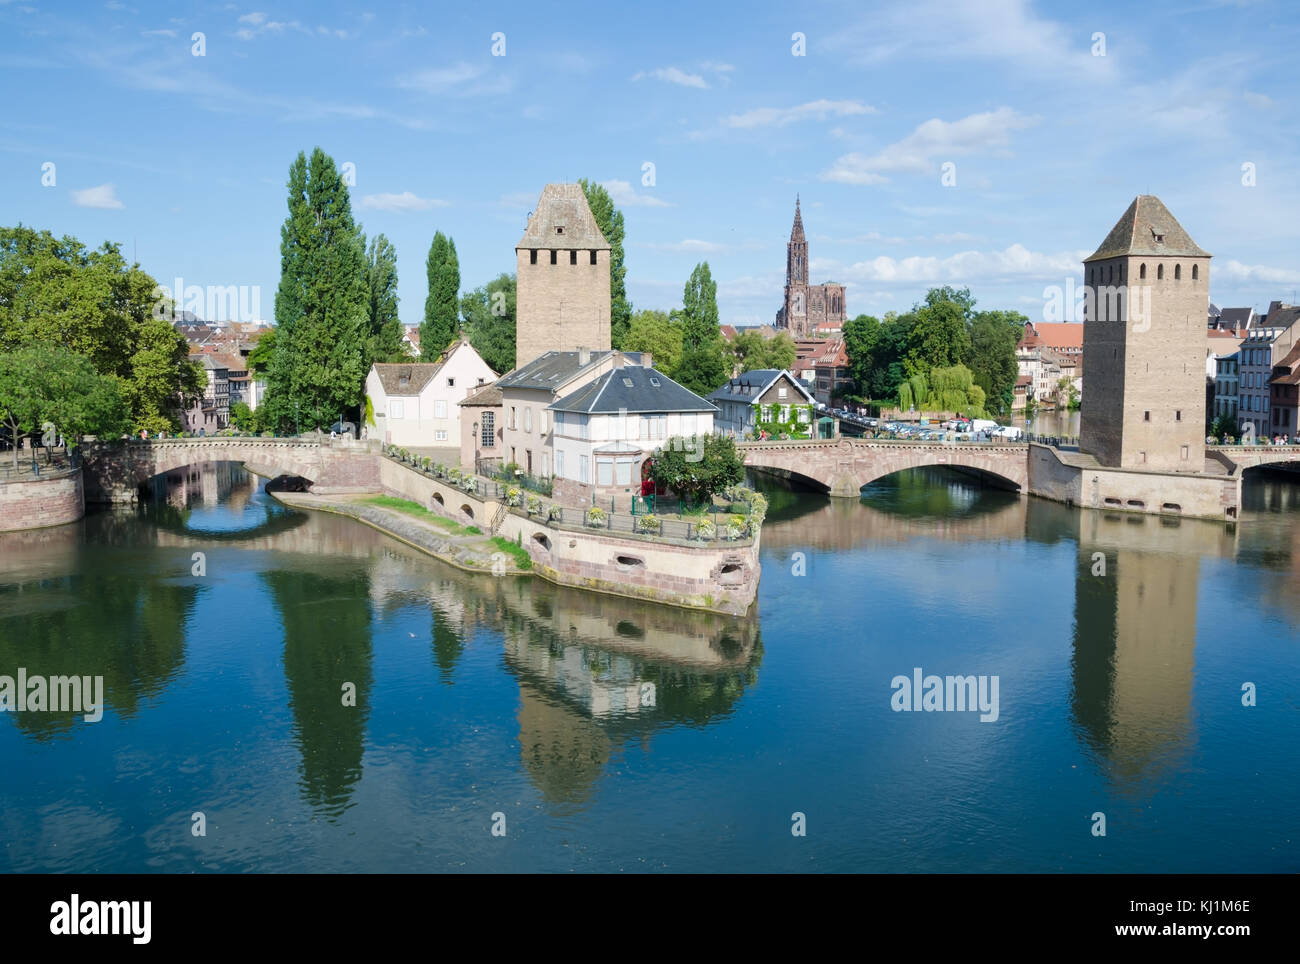 Strasbourg, France. 29 août 2016. Une vue sur les ponts couverts, l'un de la belle ville historique de Strasbourg de l'attractions touristiques. Banque D'Images